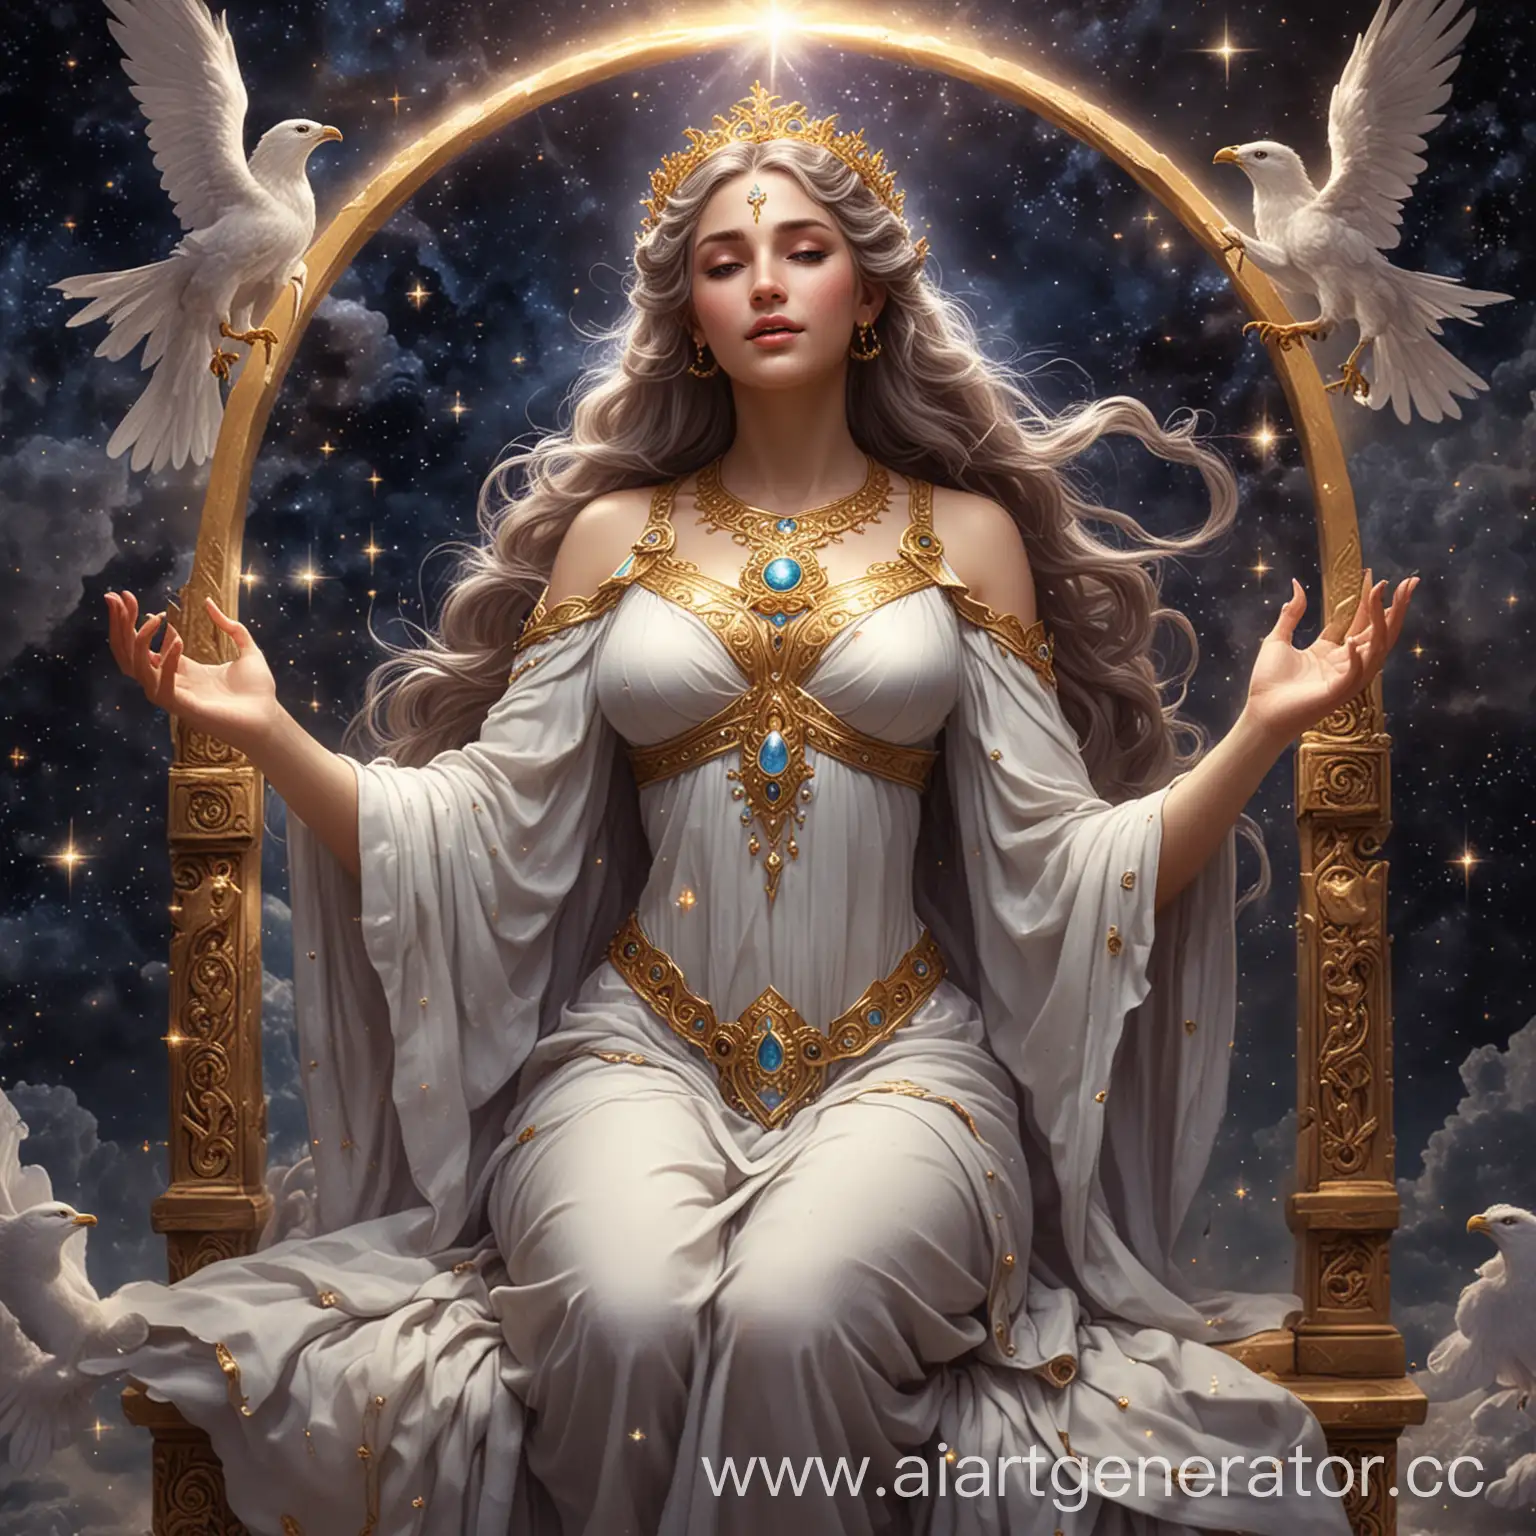 В давние времена, когда мир был ещё молод и необуздан, существовала богиня мудрости по имени Eridia. Ее величественная фигура восседала на троне из звезд в сердце небес, и ее красота и мудрость превосходили все представления о божественности. Она была непревзойденным воплощением знаний и интеллекта, и ее власть простиралась над всеми мирами и измерениями.

Легенда гласит, что у Eridia было особое дарование: на каждом из ее пальцев сияли миры. Каждый палец, будучи нежно прикосновенным ее божественной рукой, открывал новую вселенную с собственными законами и загадками. Она смотрела на свои пальцы с любовью и заботой, ведь каждый из них был ей дорог.

Мудрая и бесконечно сострадательная, Eridia руководила мирами с мудростью и заботой. Ее целью было поддерживать равновесие и гармонию во вселенной, внушая своим существам познание и вдохновение. Ее мудрость пронизывала все уголки мира, и ее знания были источником света и истины для всех, кто искал мудрость и понимание.